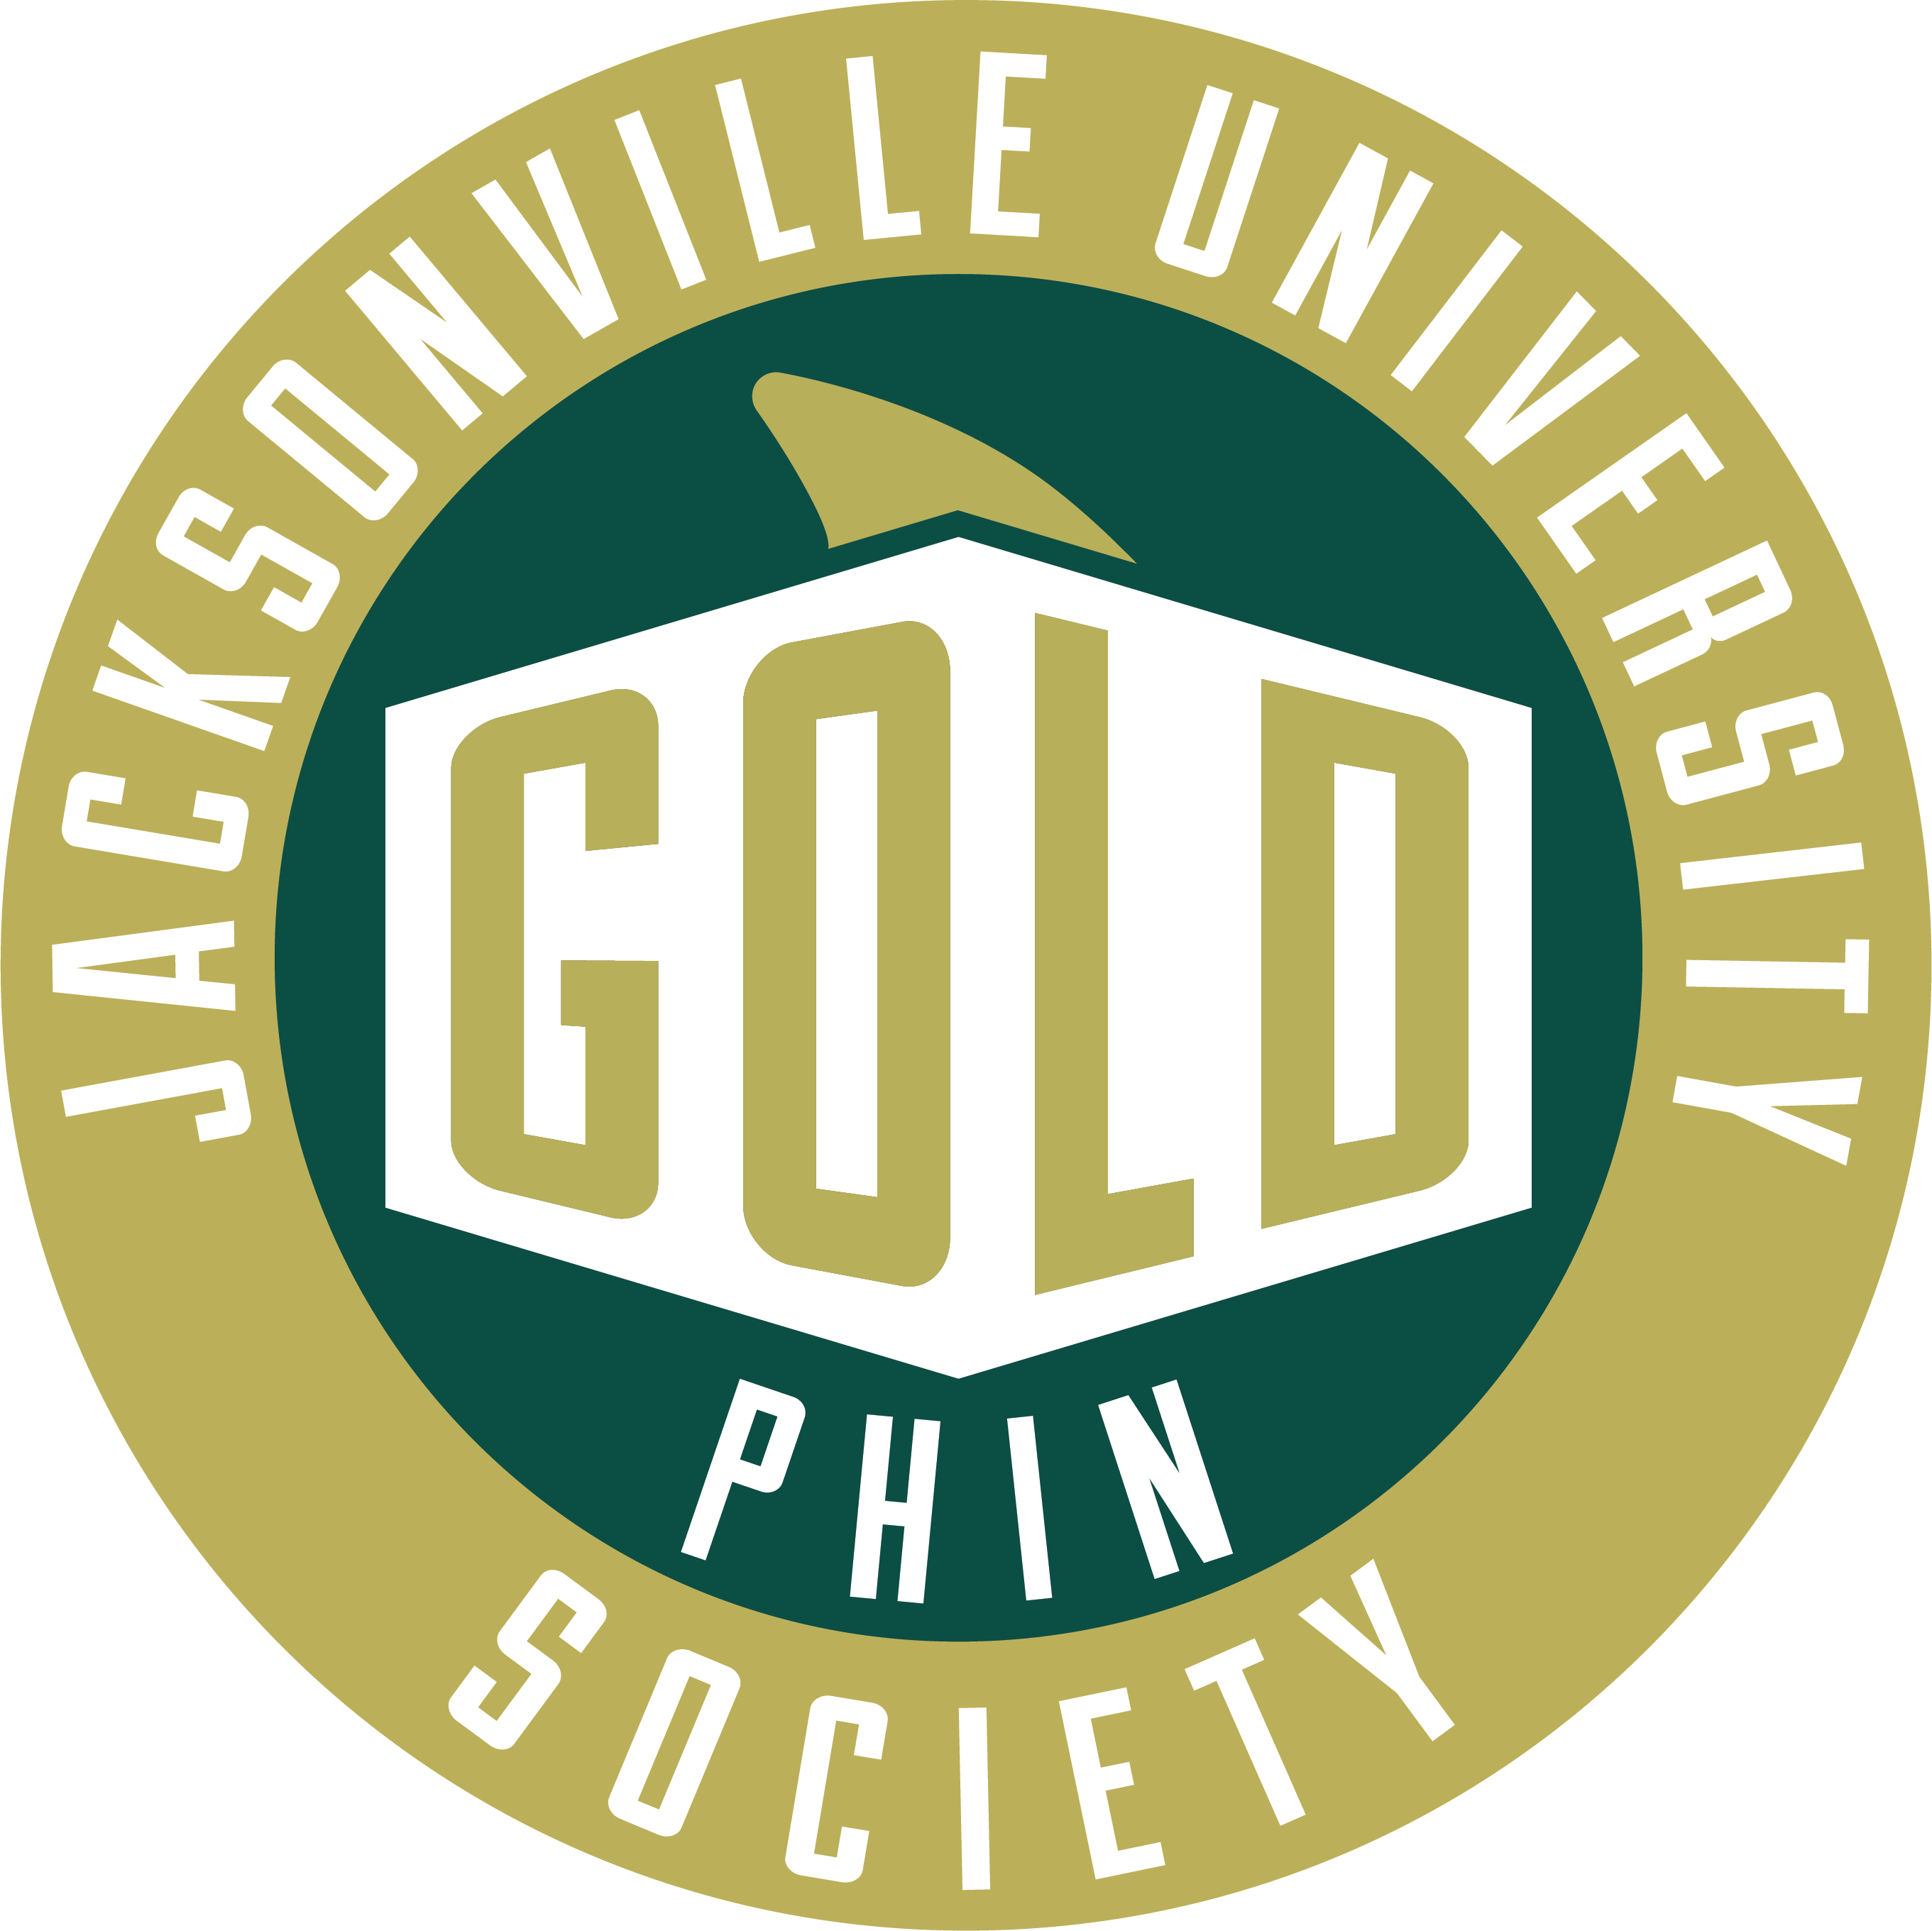 GOLD Phin Society Logo